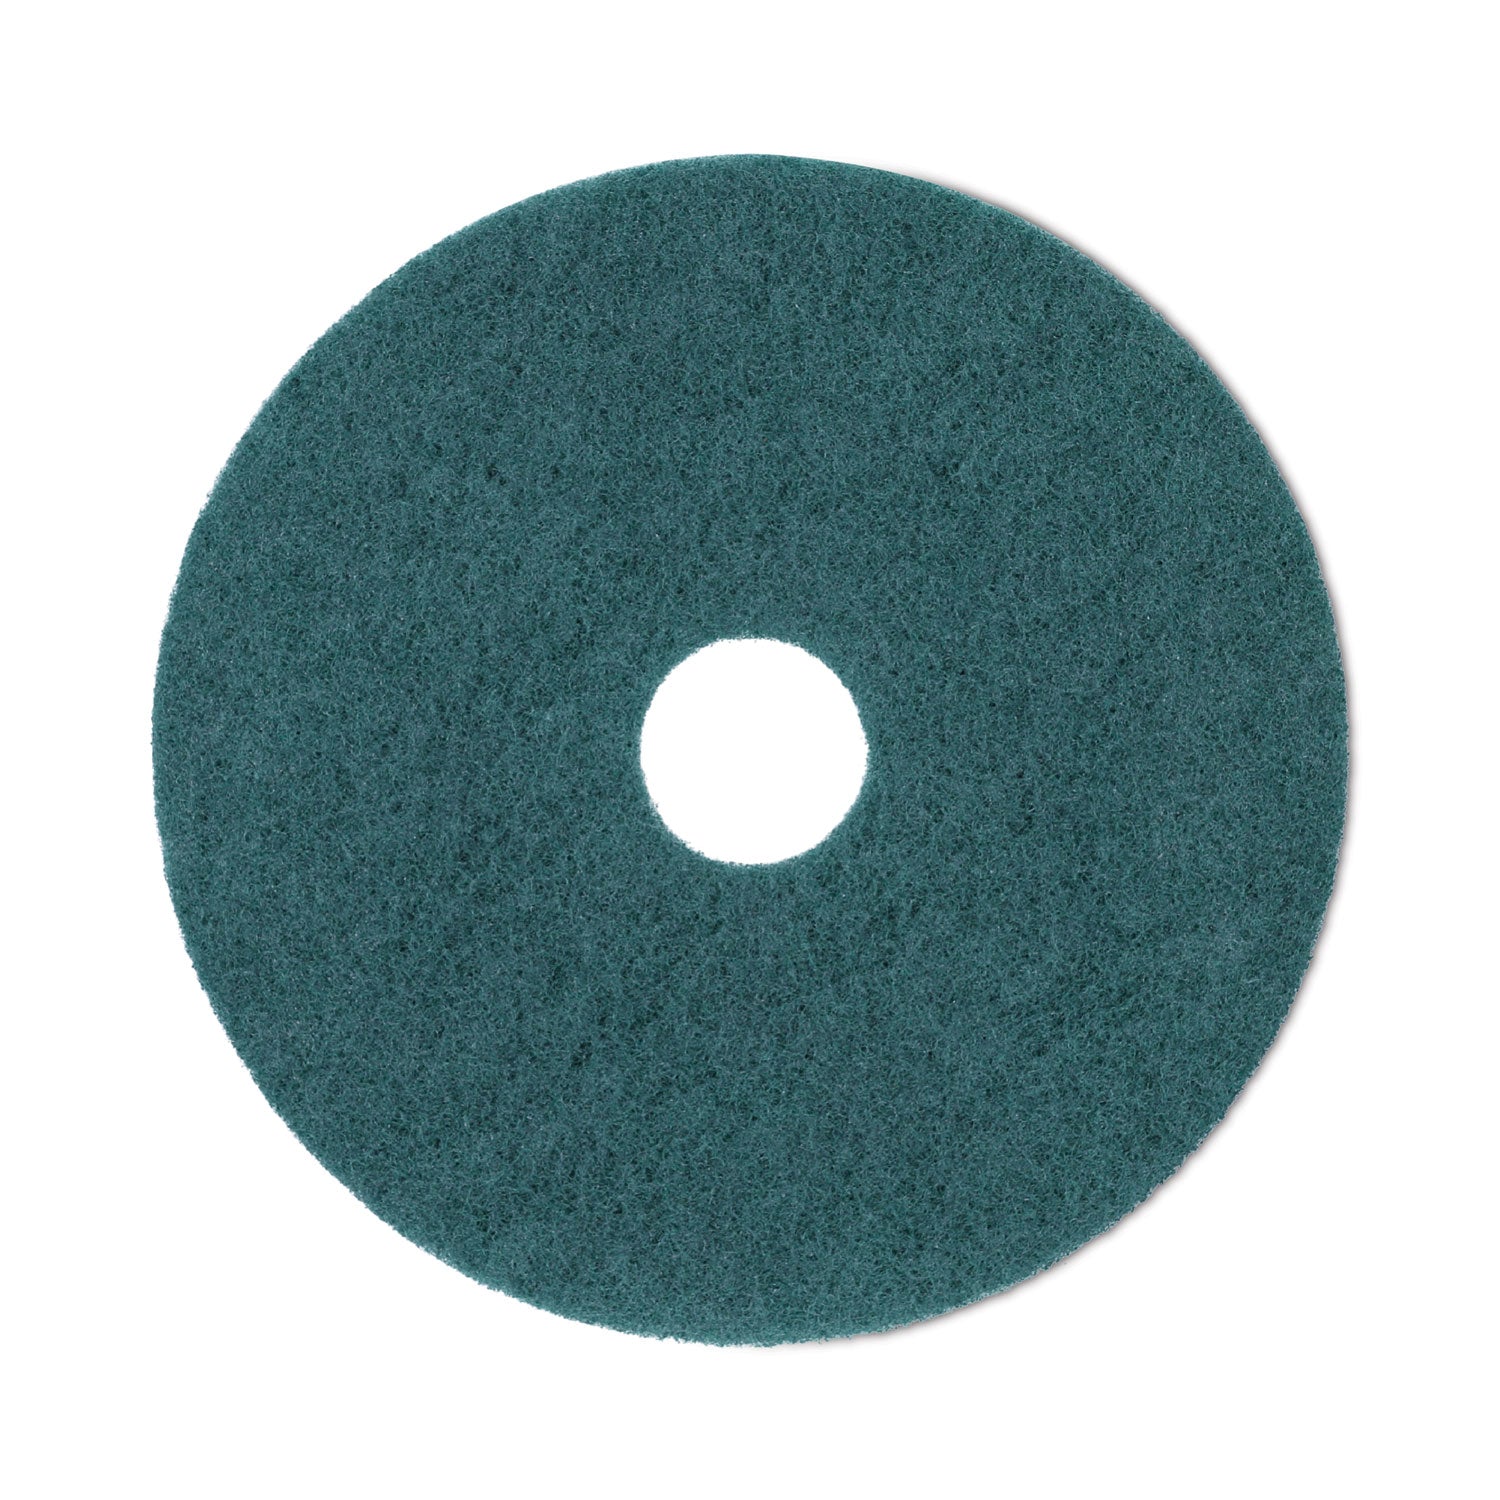 heavy-duty-scrubbing-floor-pads-19-diameter-green-5-carton_bwk4019gre - 1